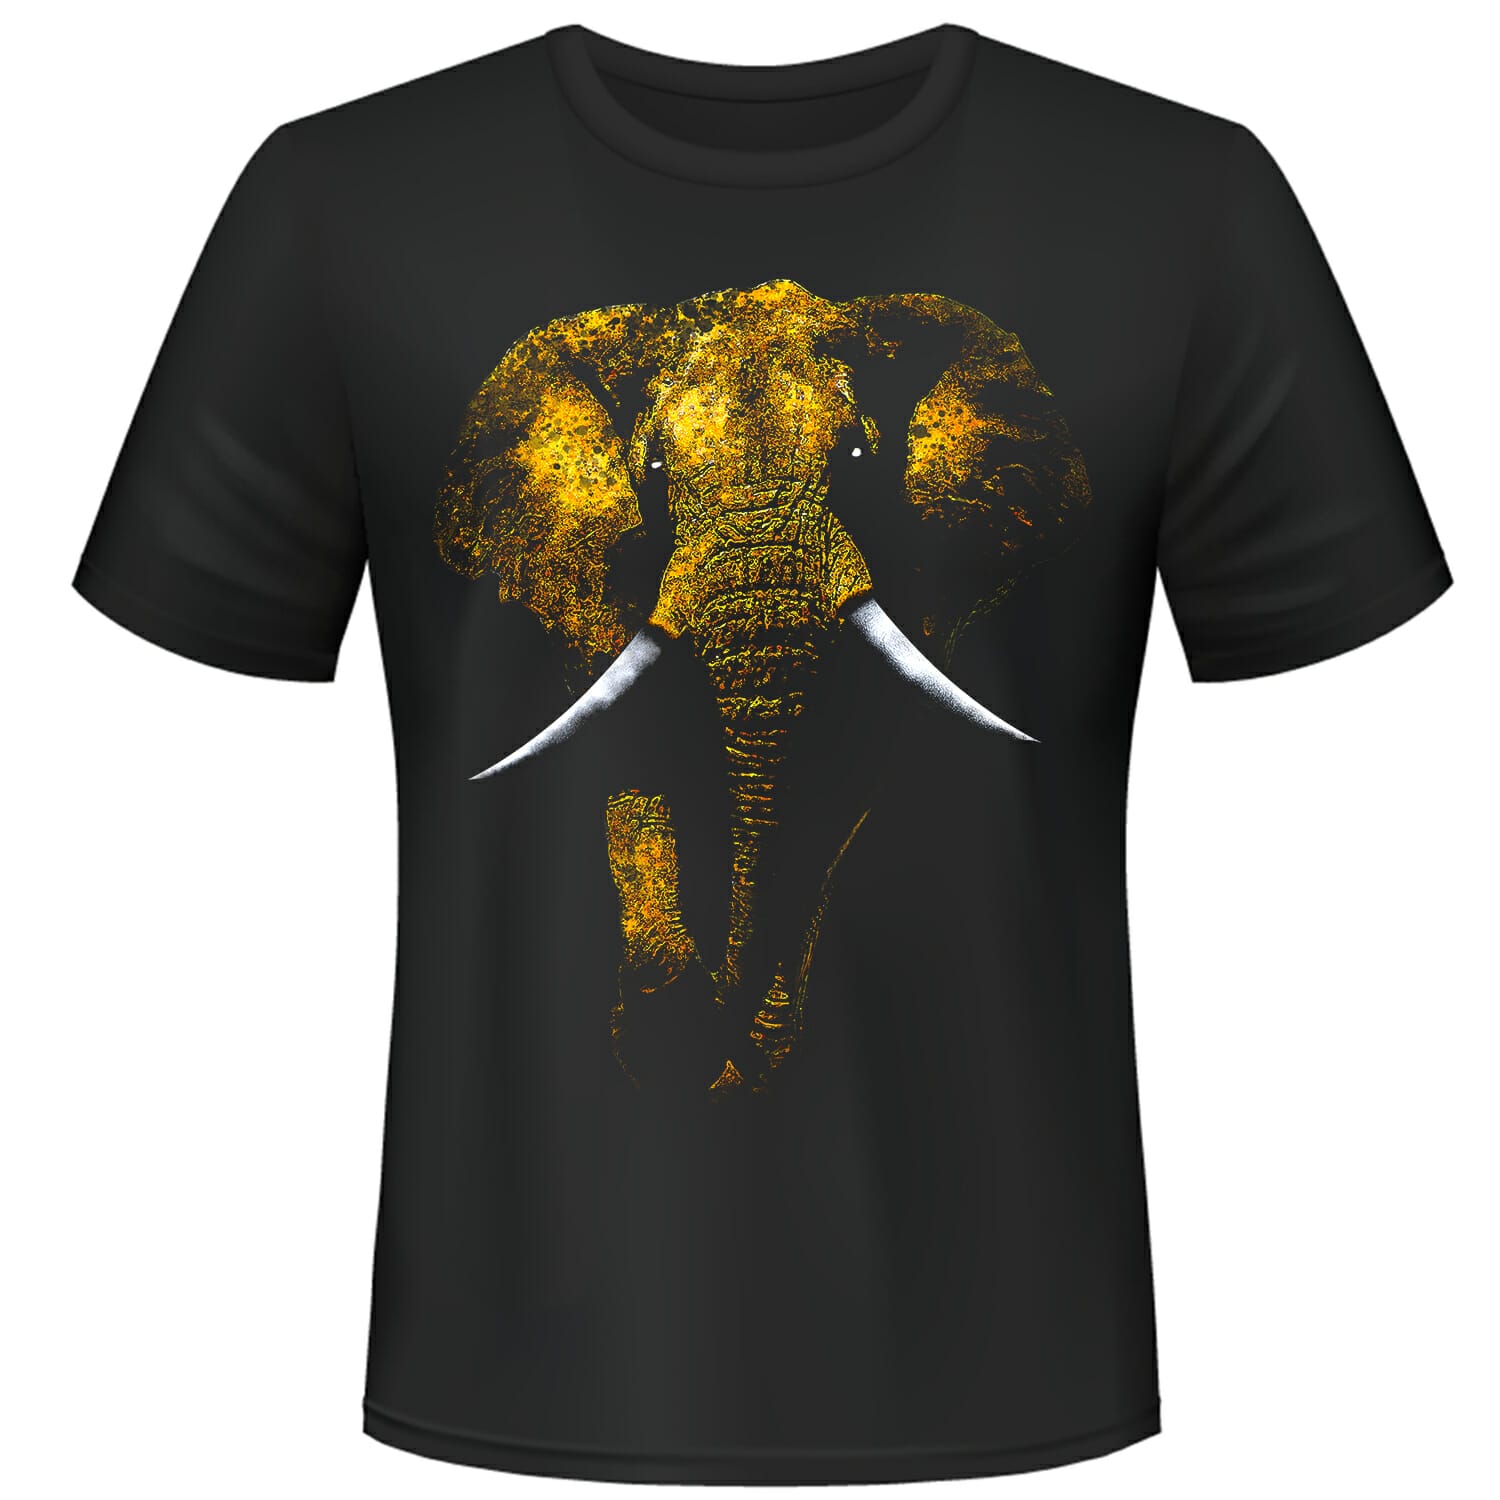 Mystical Elephant Tshirt Design with halftone effect